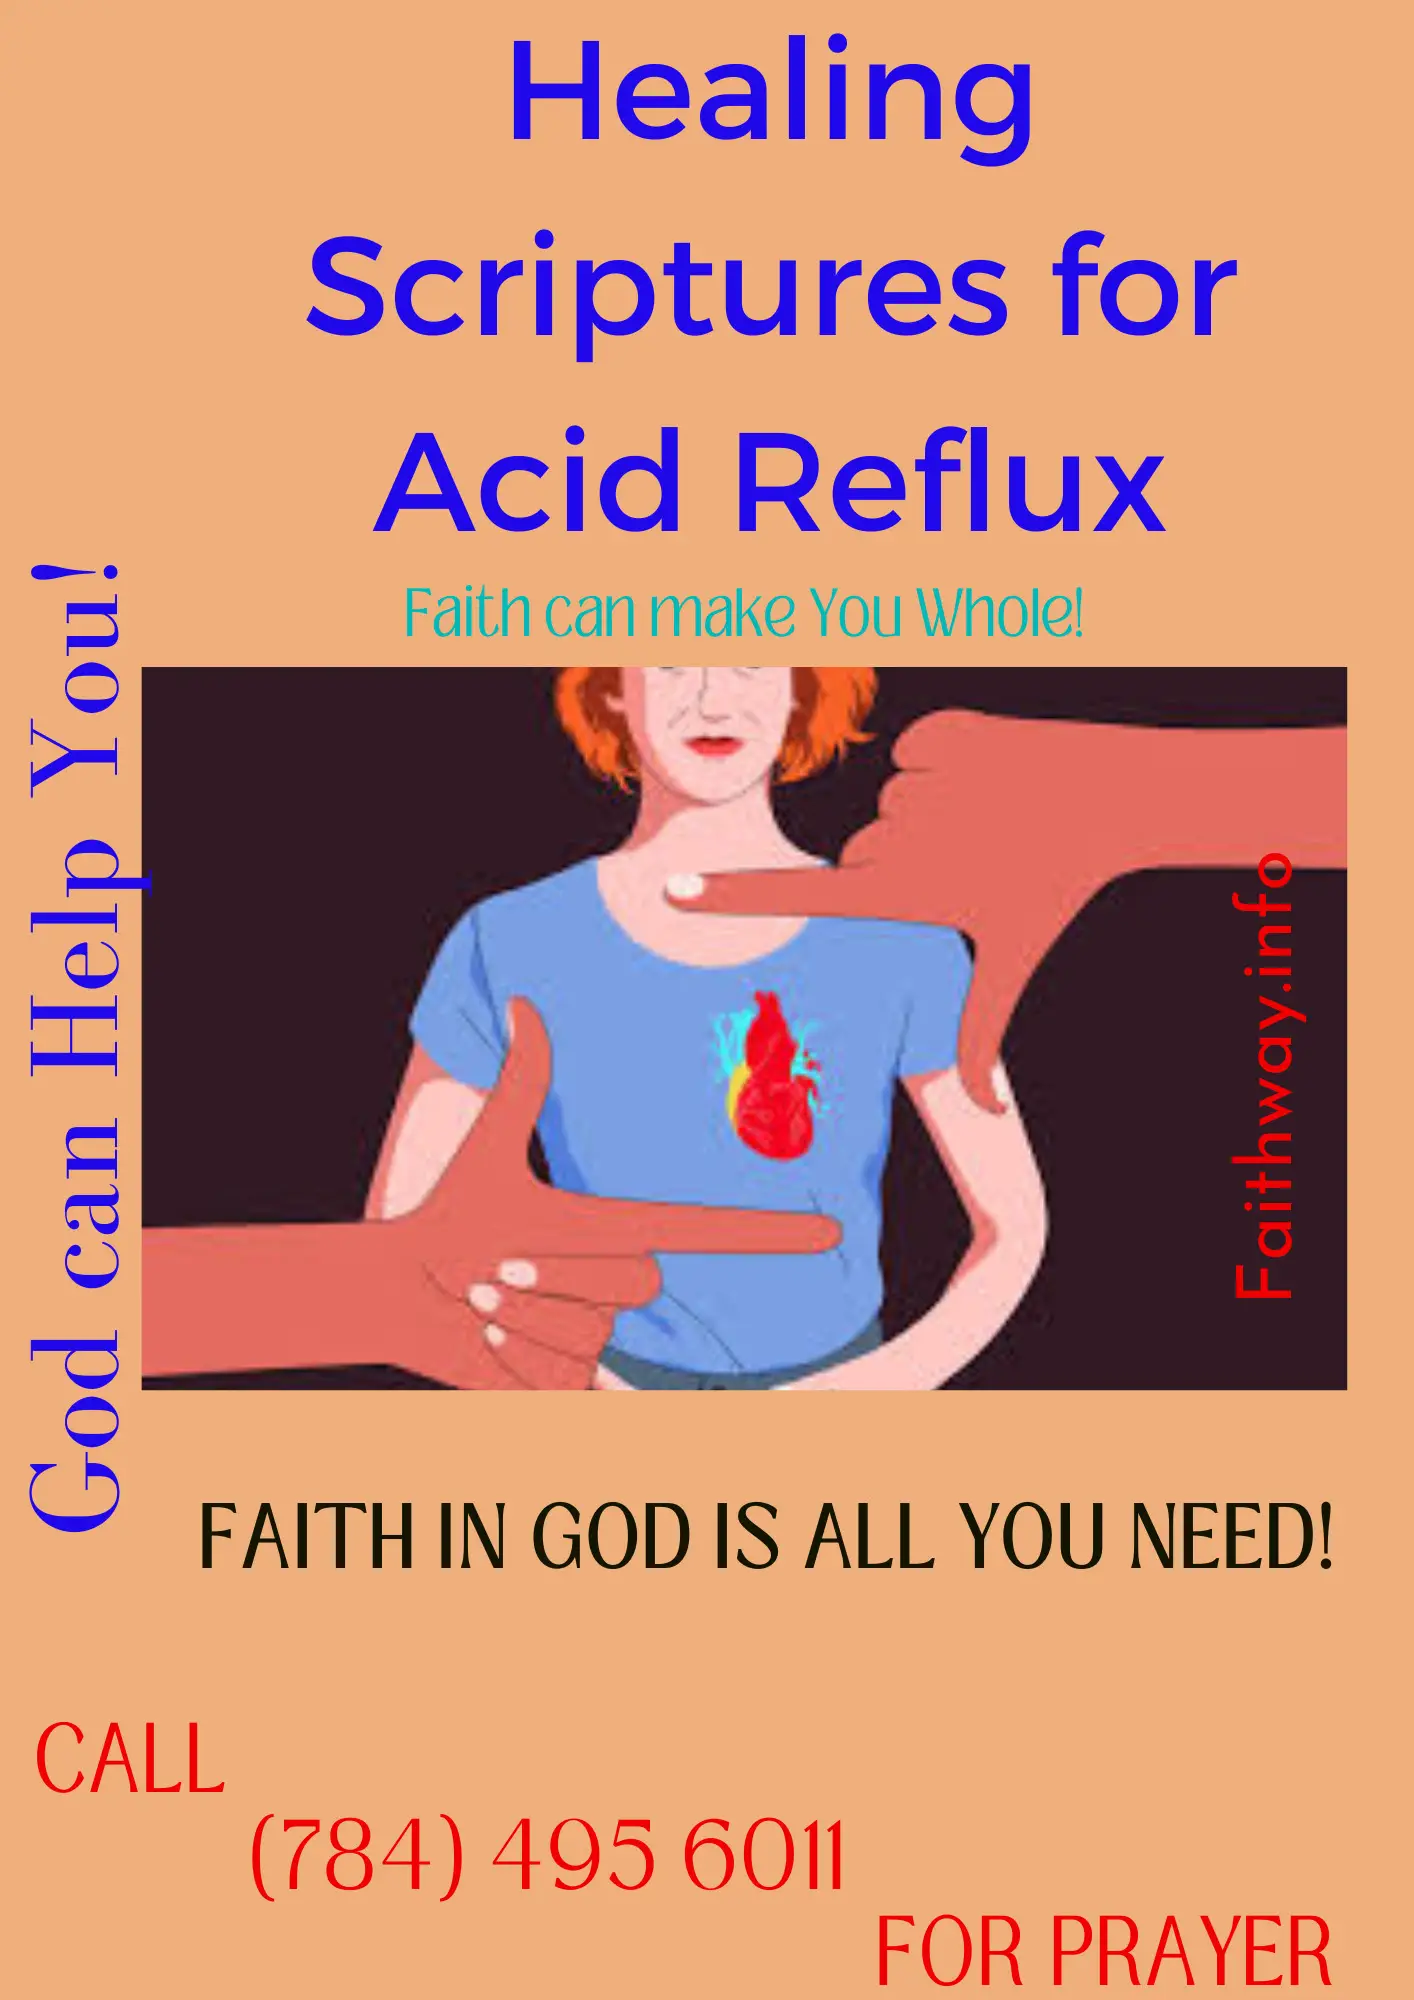 21 Escrituras curativas para el reflujo ácido: Versículos bíblicos KJV -